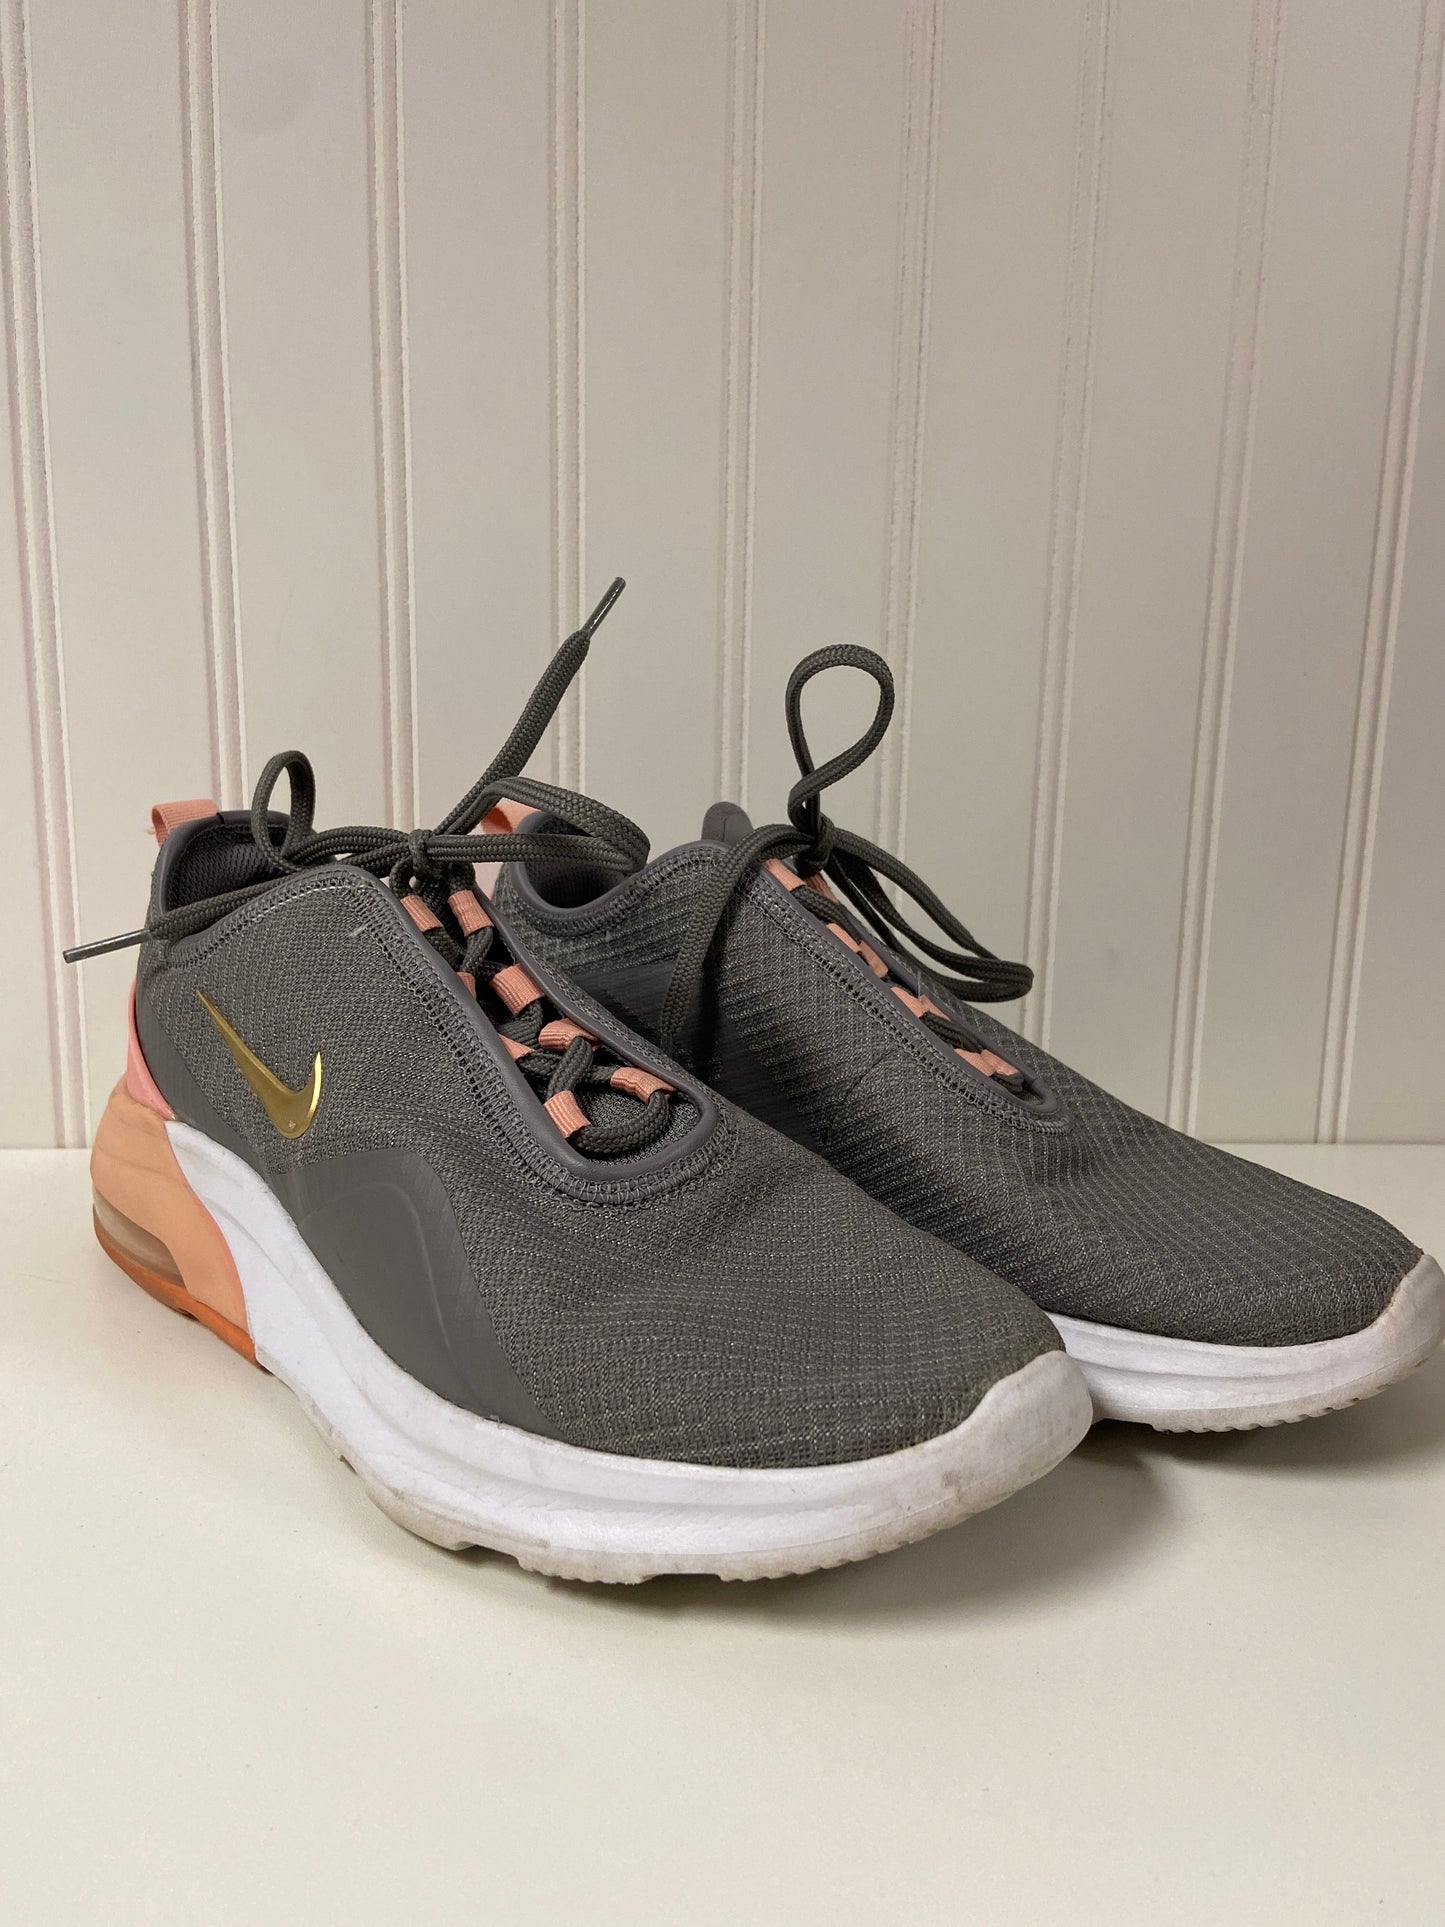 Grey Shoes Athletic Nike, Size 8